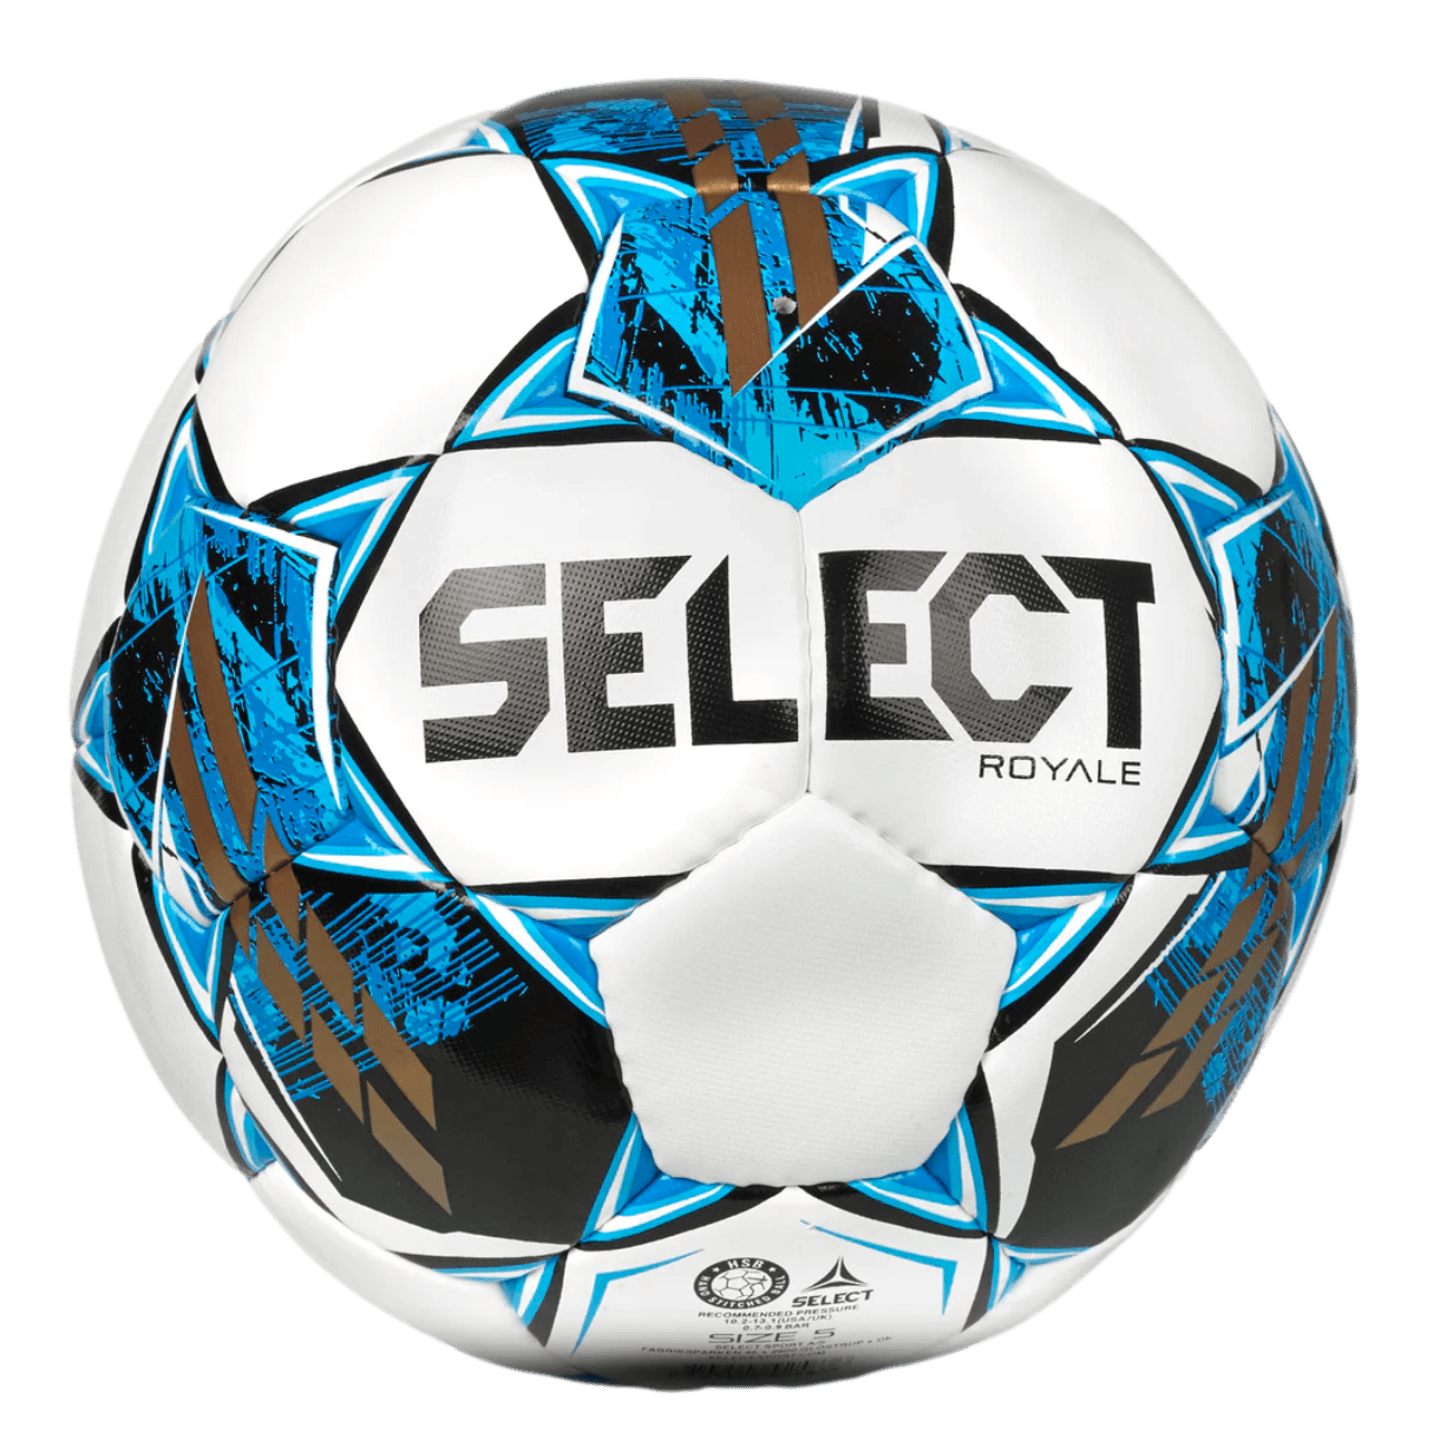 Seleccione el balón de fútbol Royale V22 NFHS